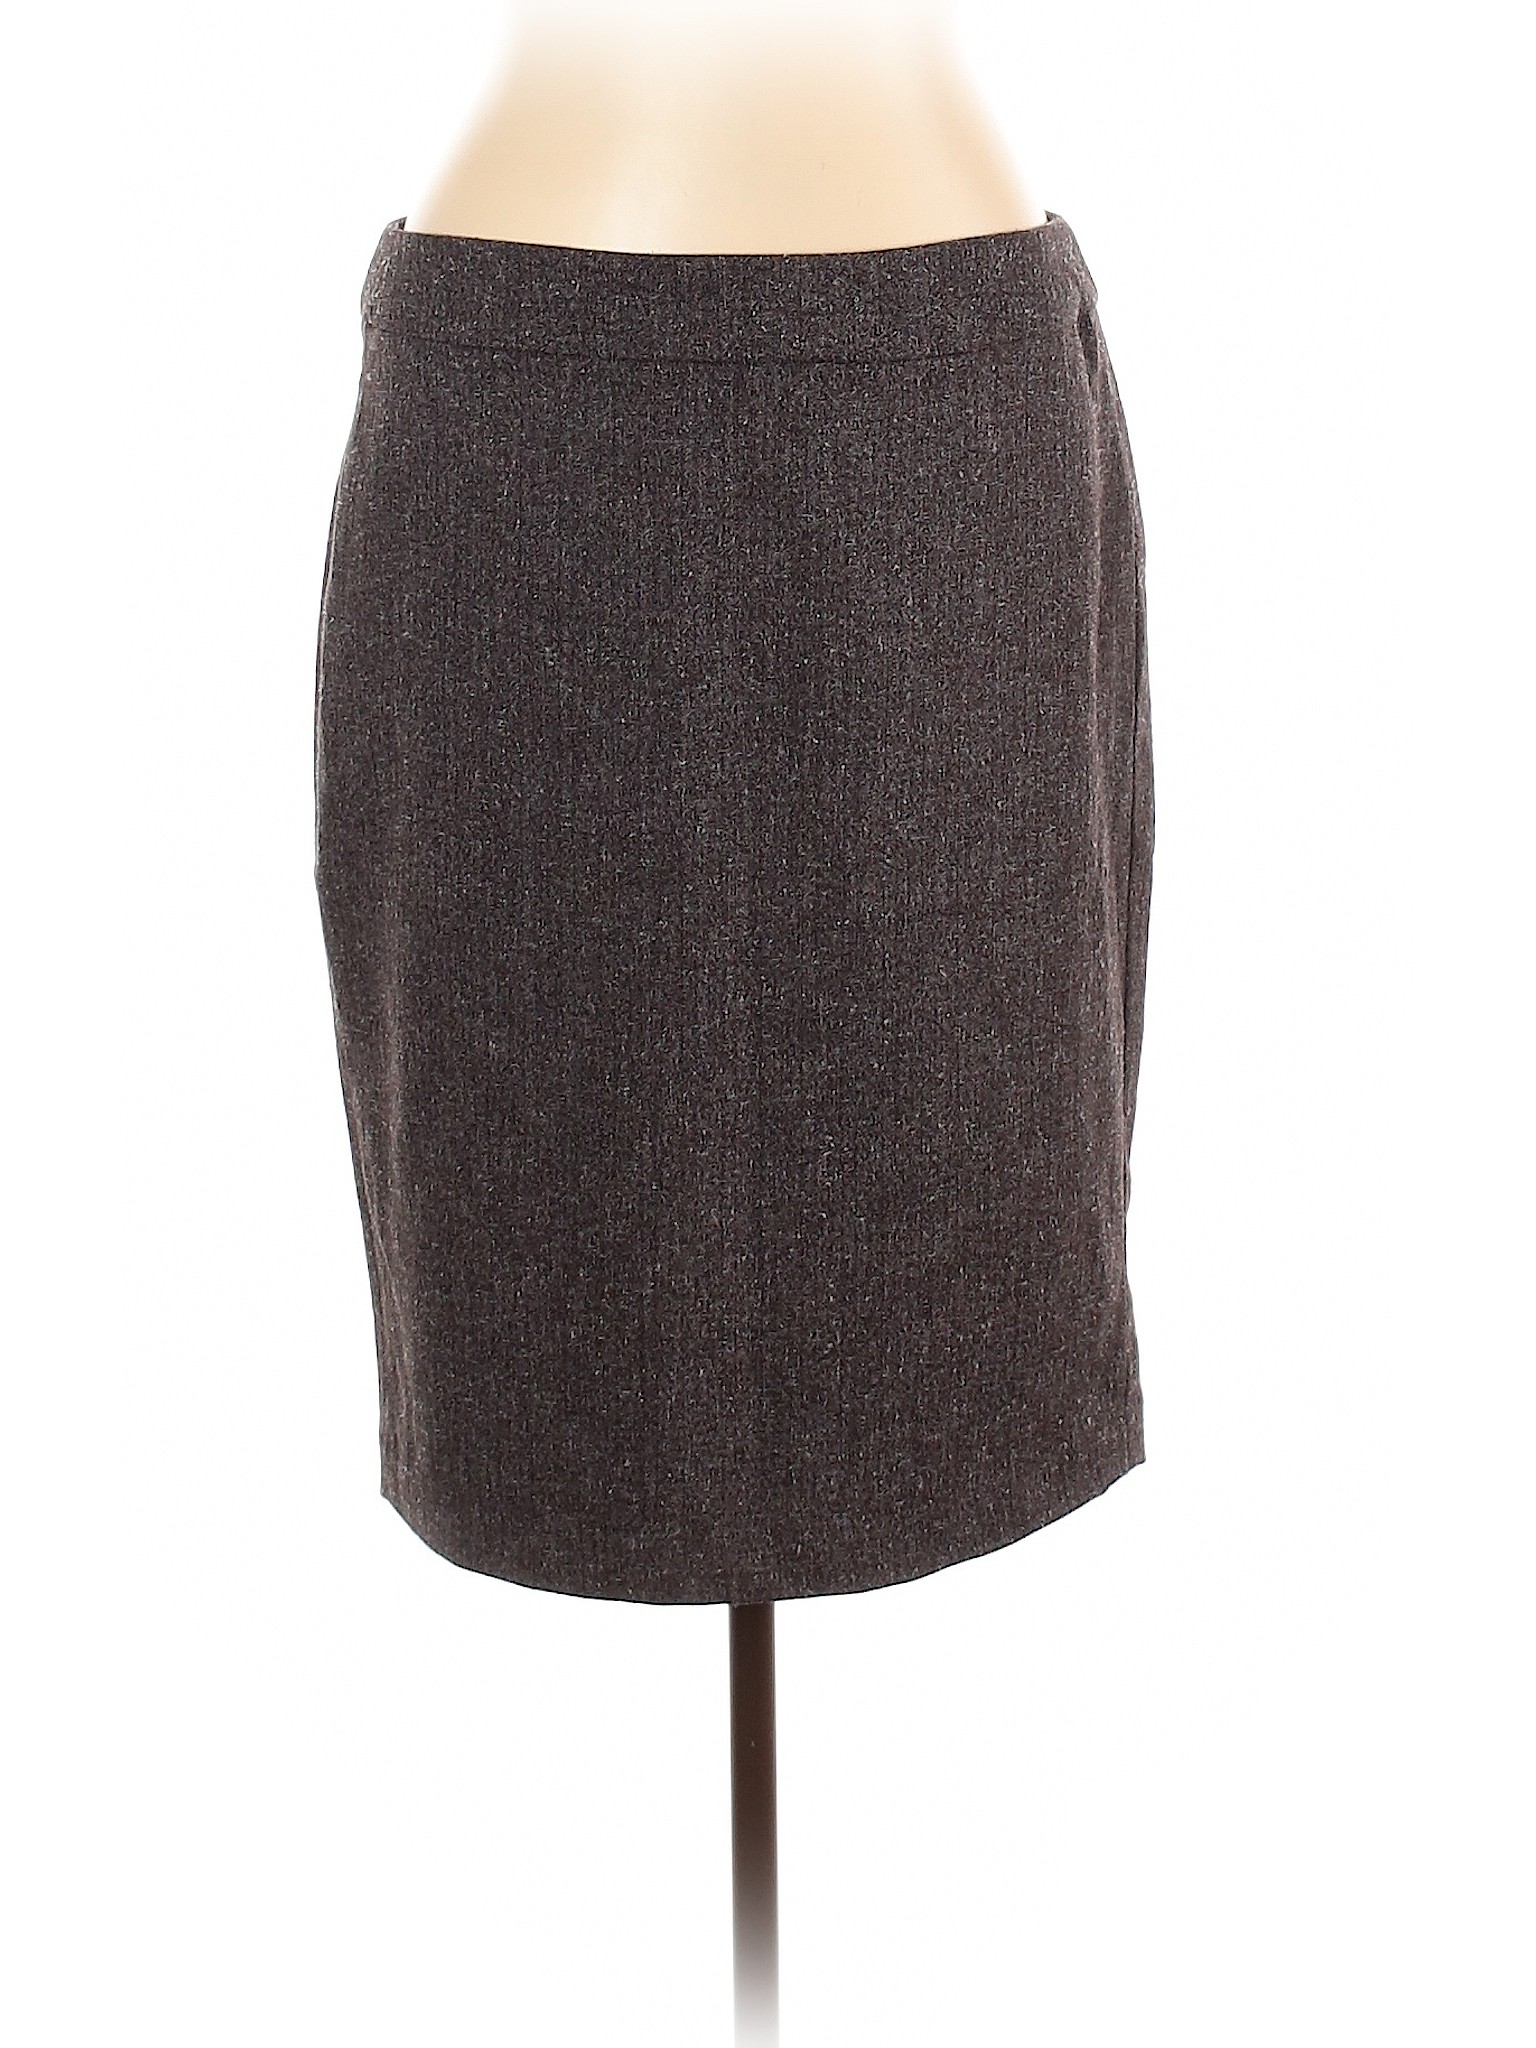 Premise Studio Women Gray Casual Skirt 12 | eBay